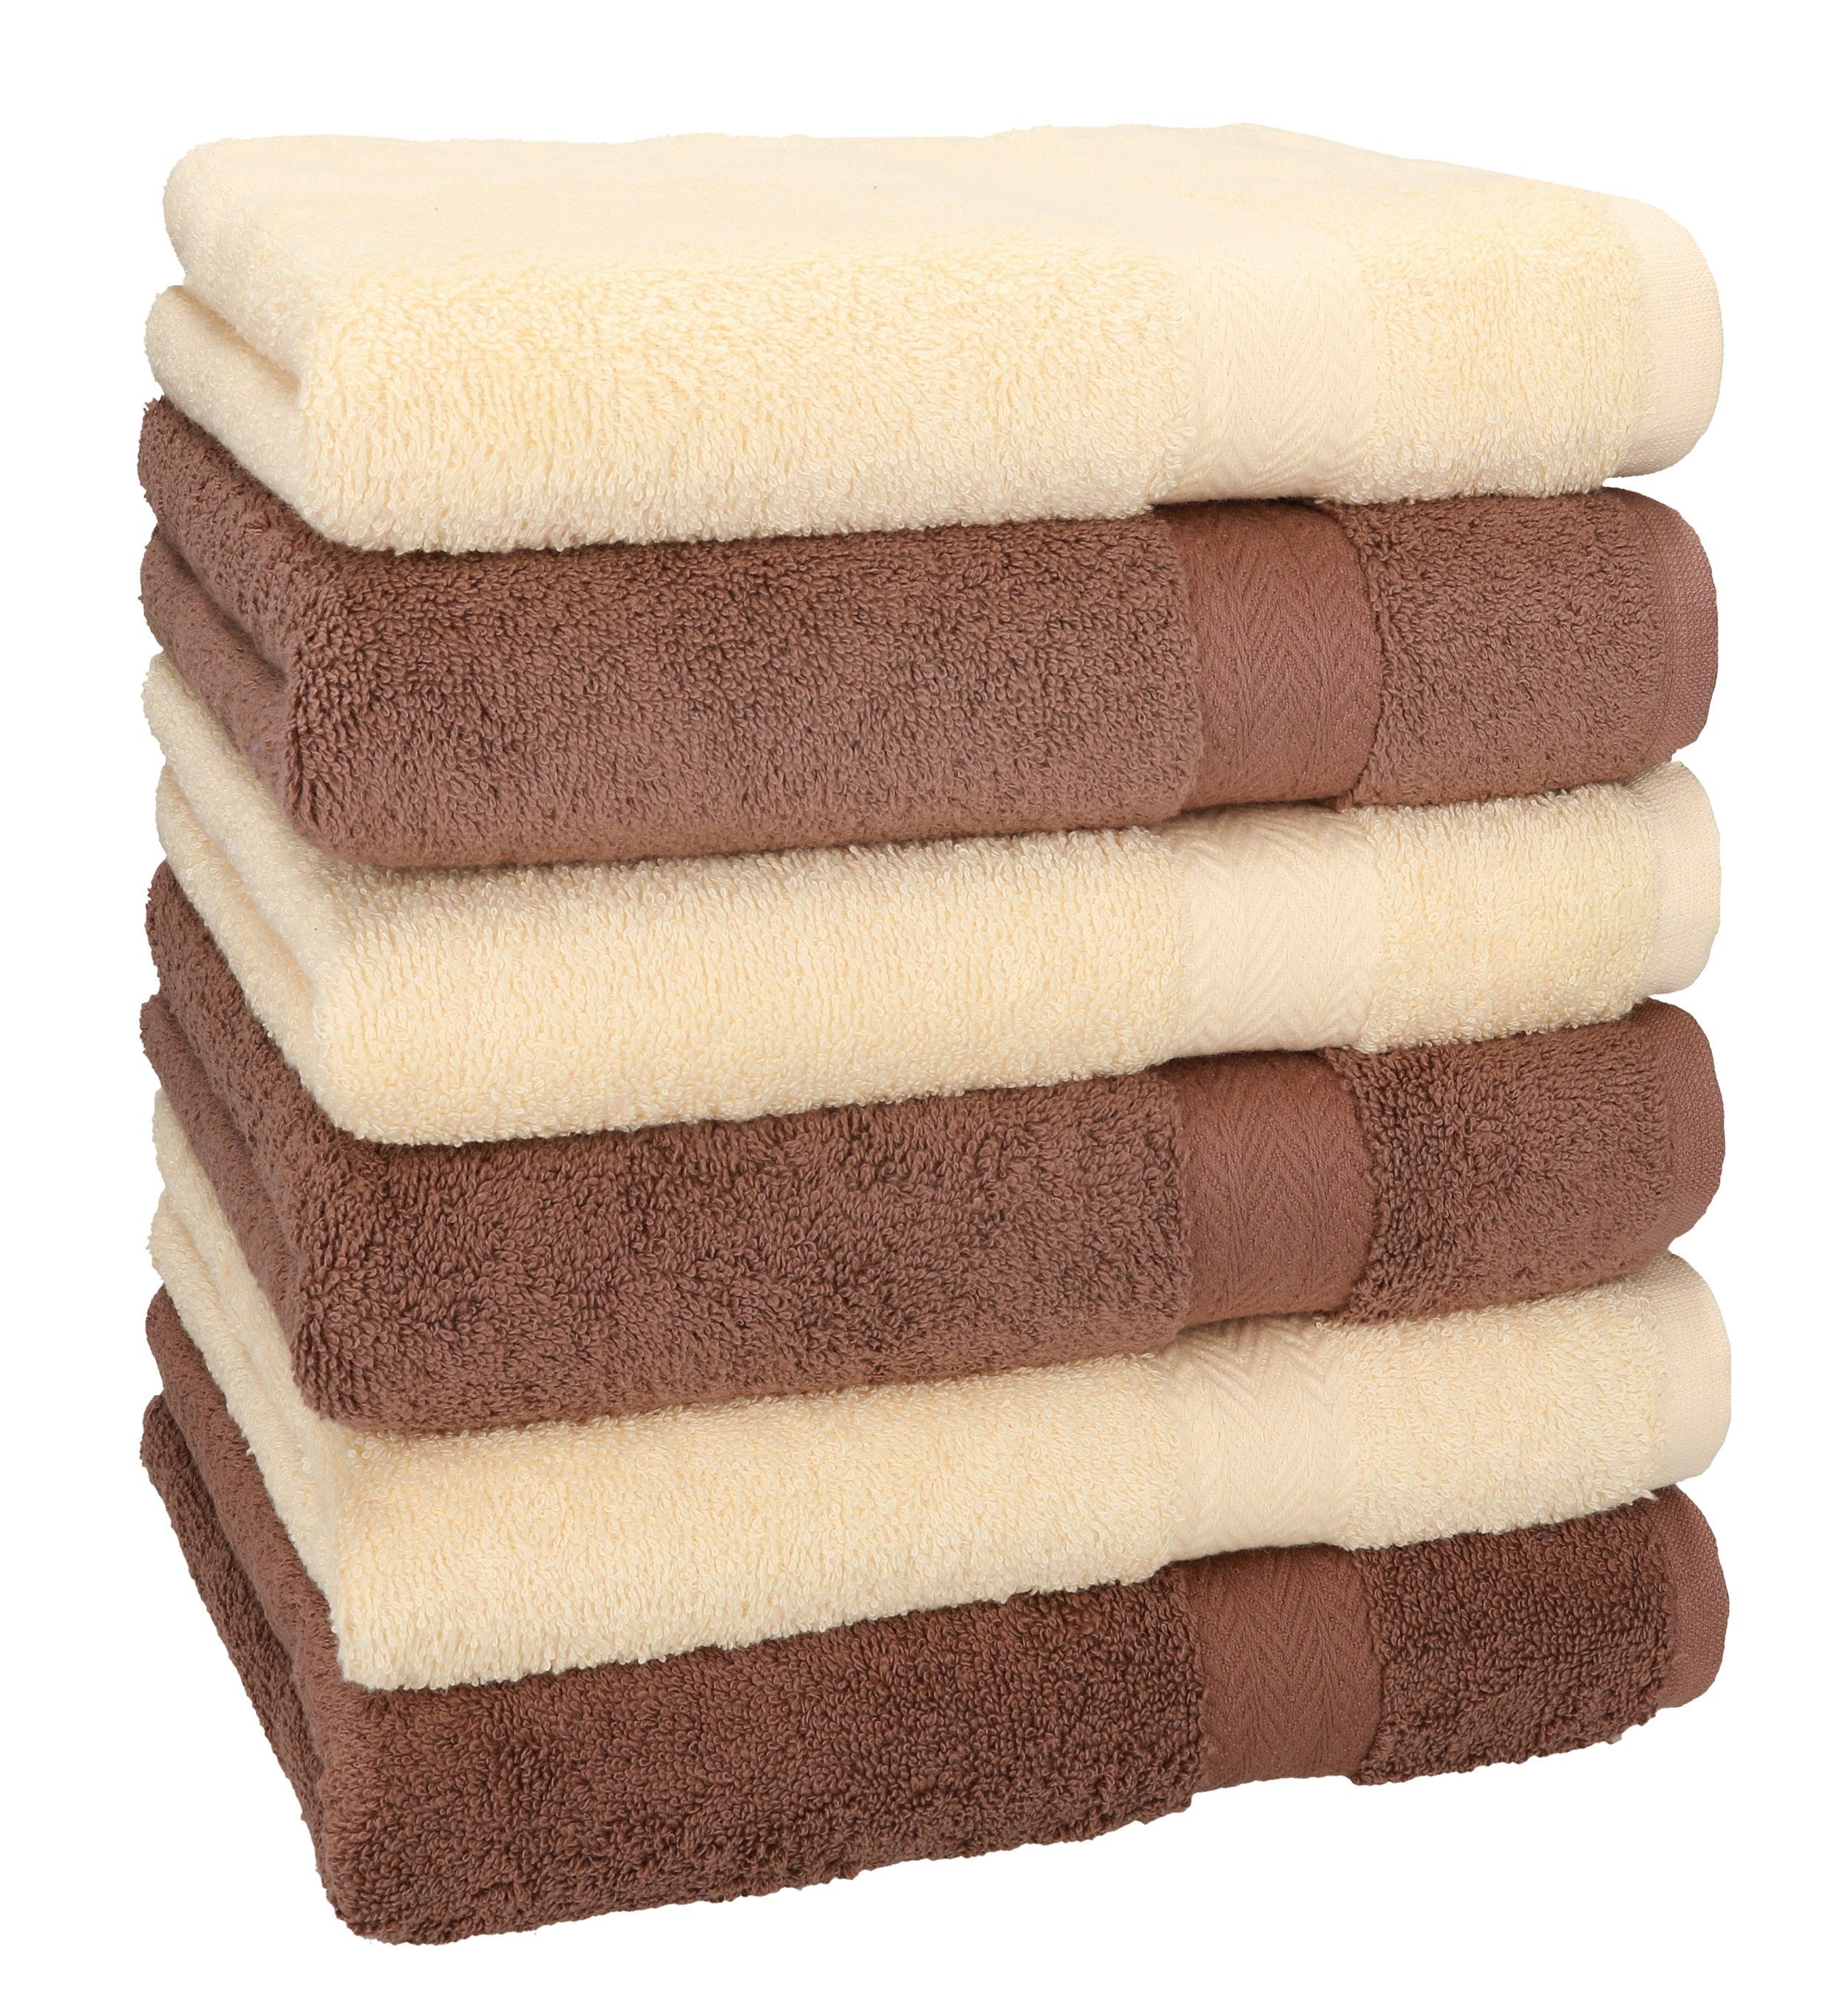 Betz Handtücher 6 Stück Handtücher Größe 50 x 100 cm Premium Handtuch Set 100% Baumwolle Farbe beige/nuss Braun, 100% Baumwolle (6-St)